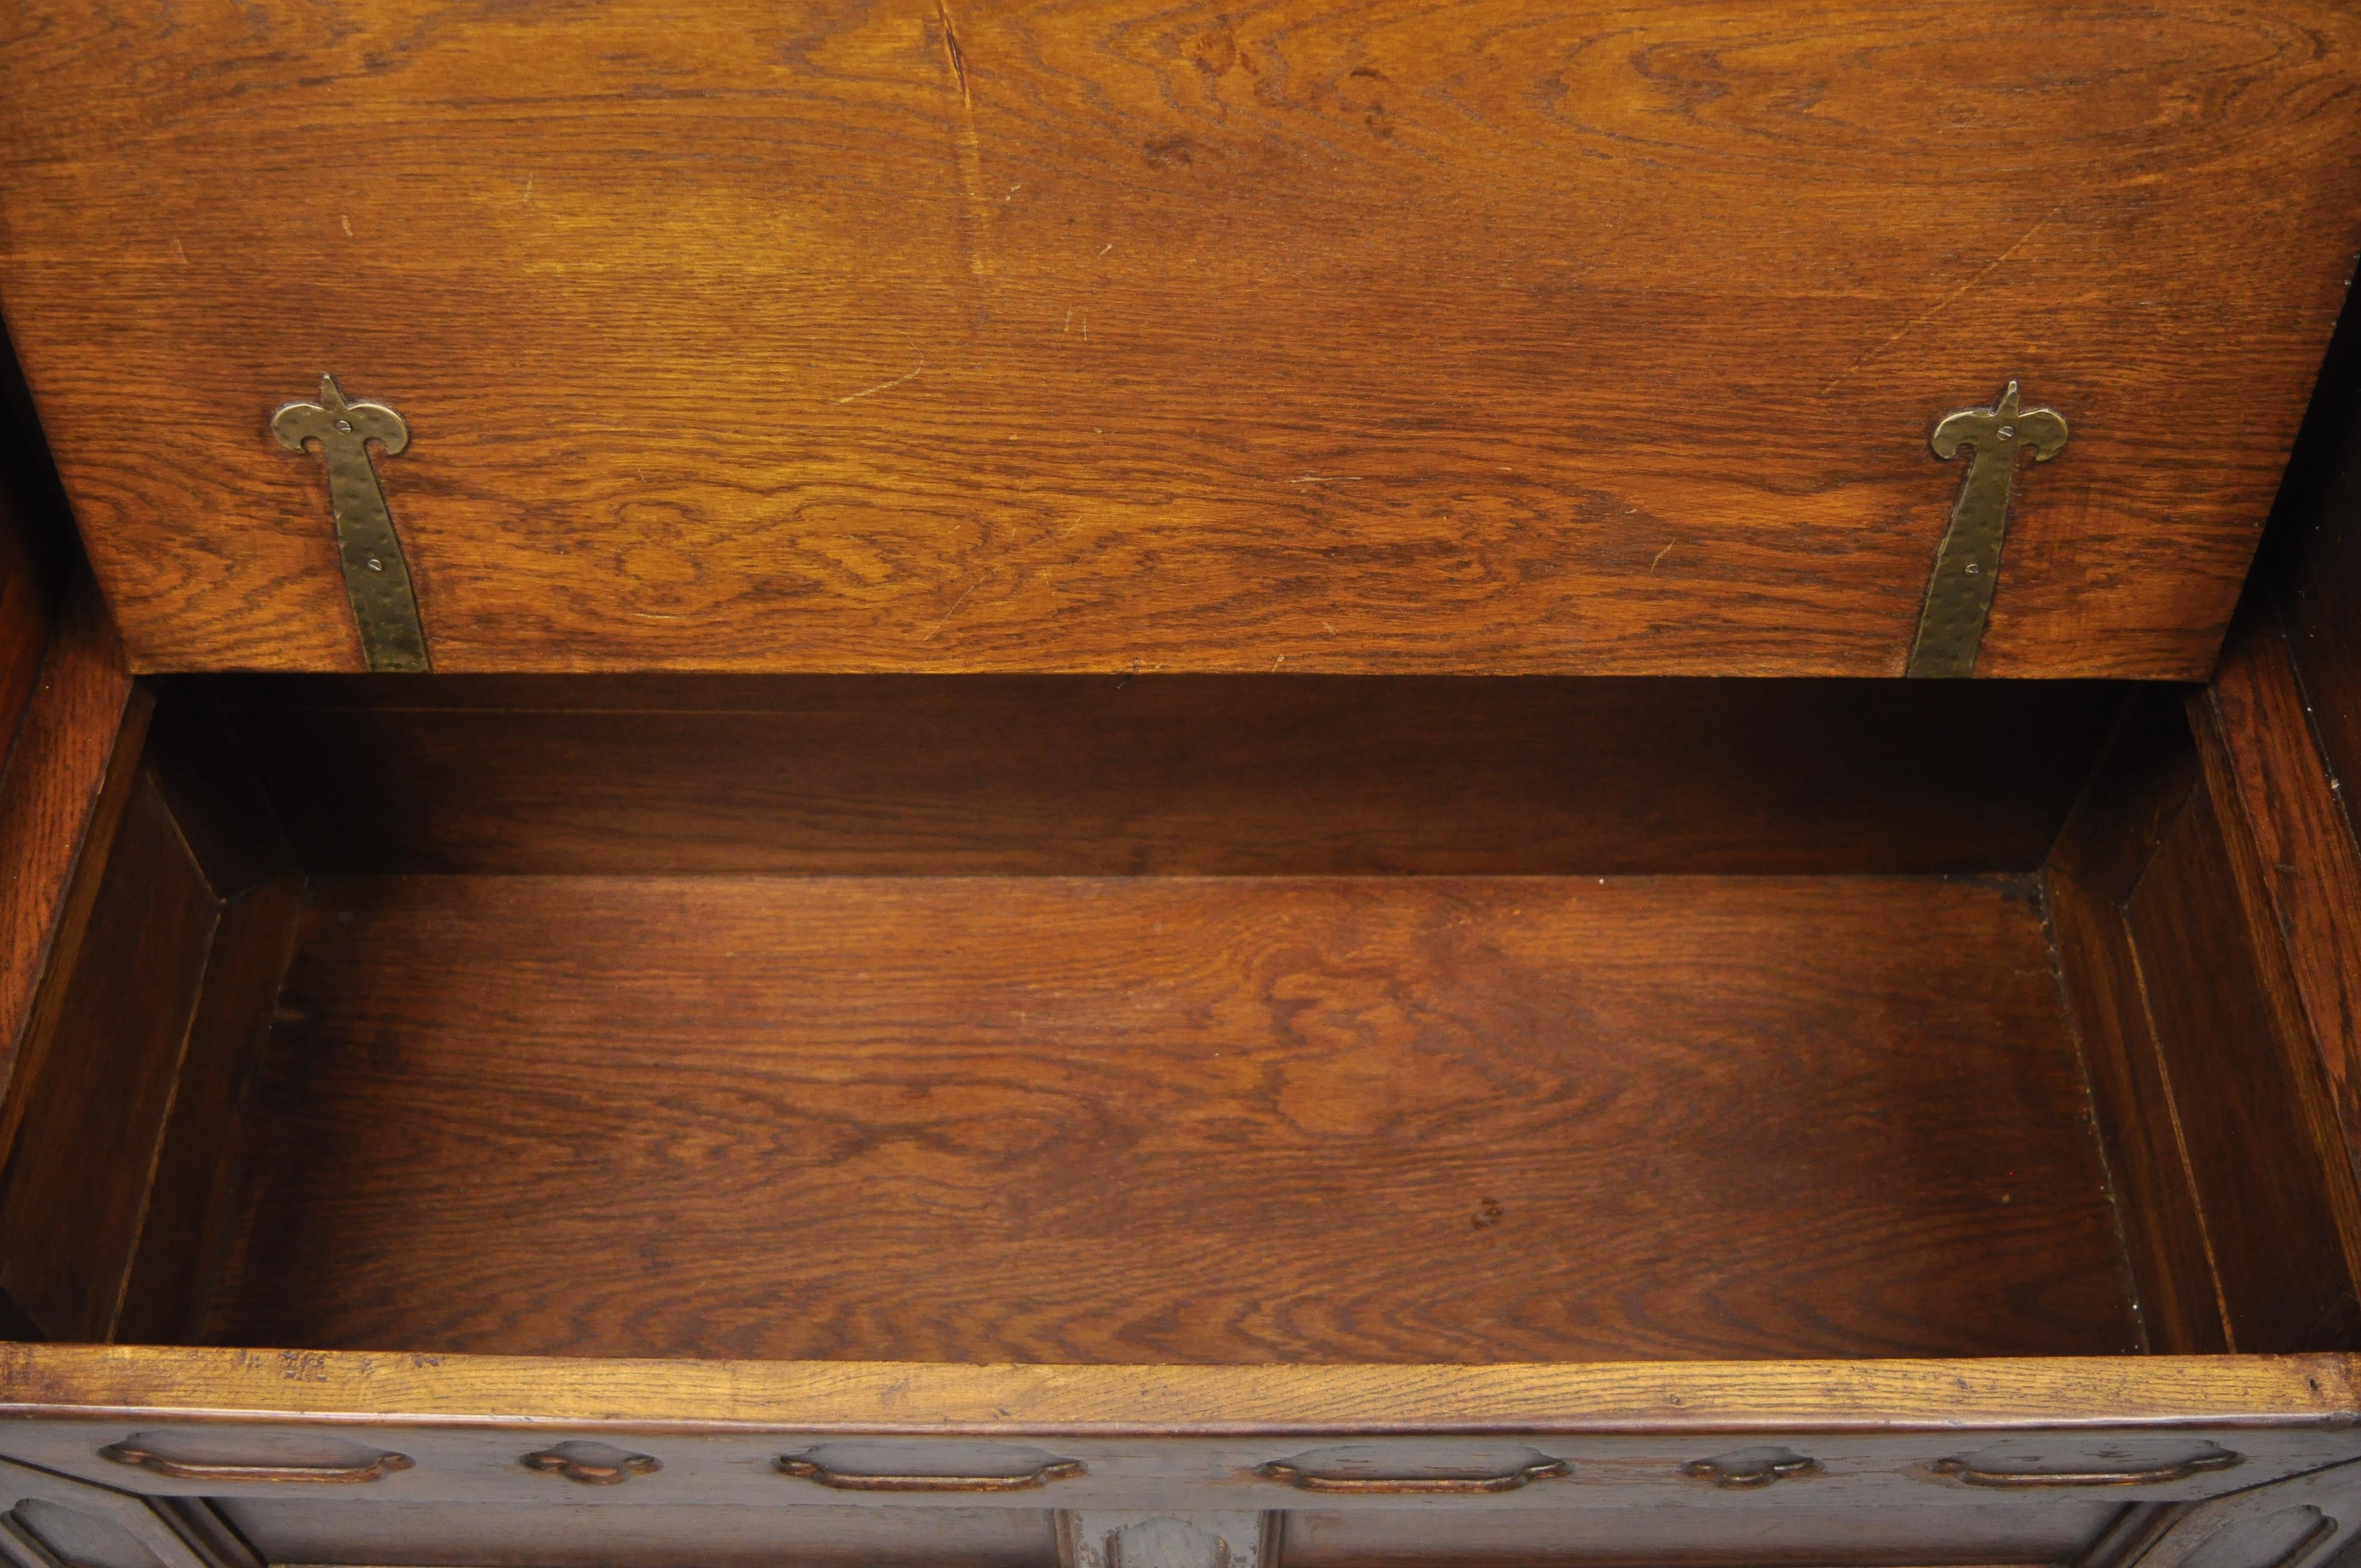 European Antique English Jacobean Renaissance Revival Oak Wood Pew Bench with Storage Lid